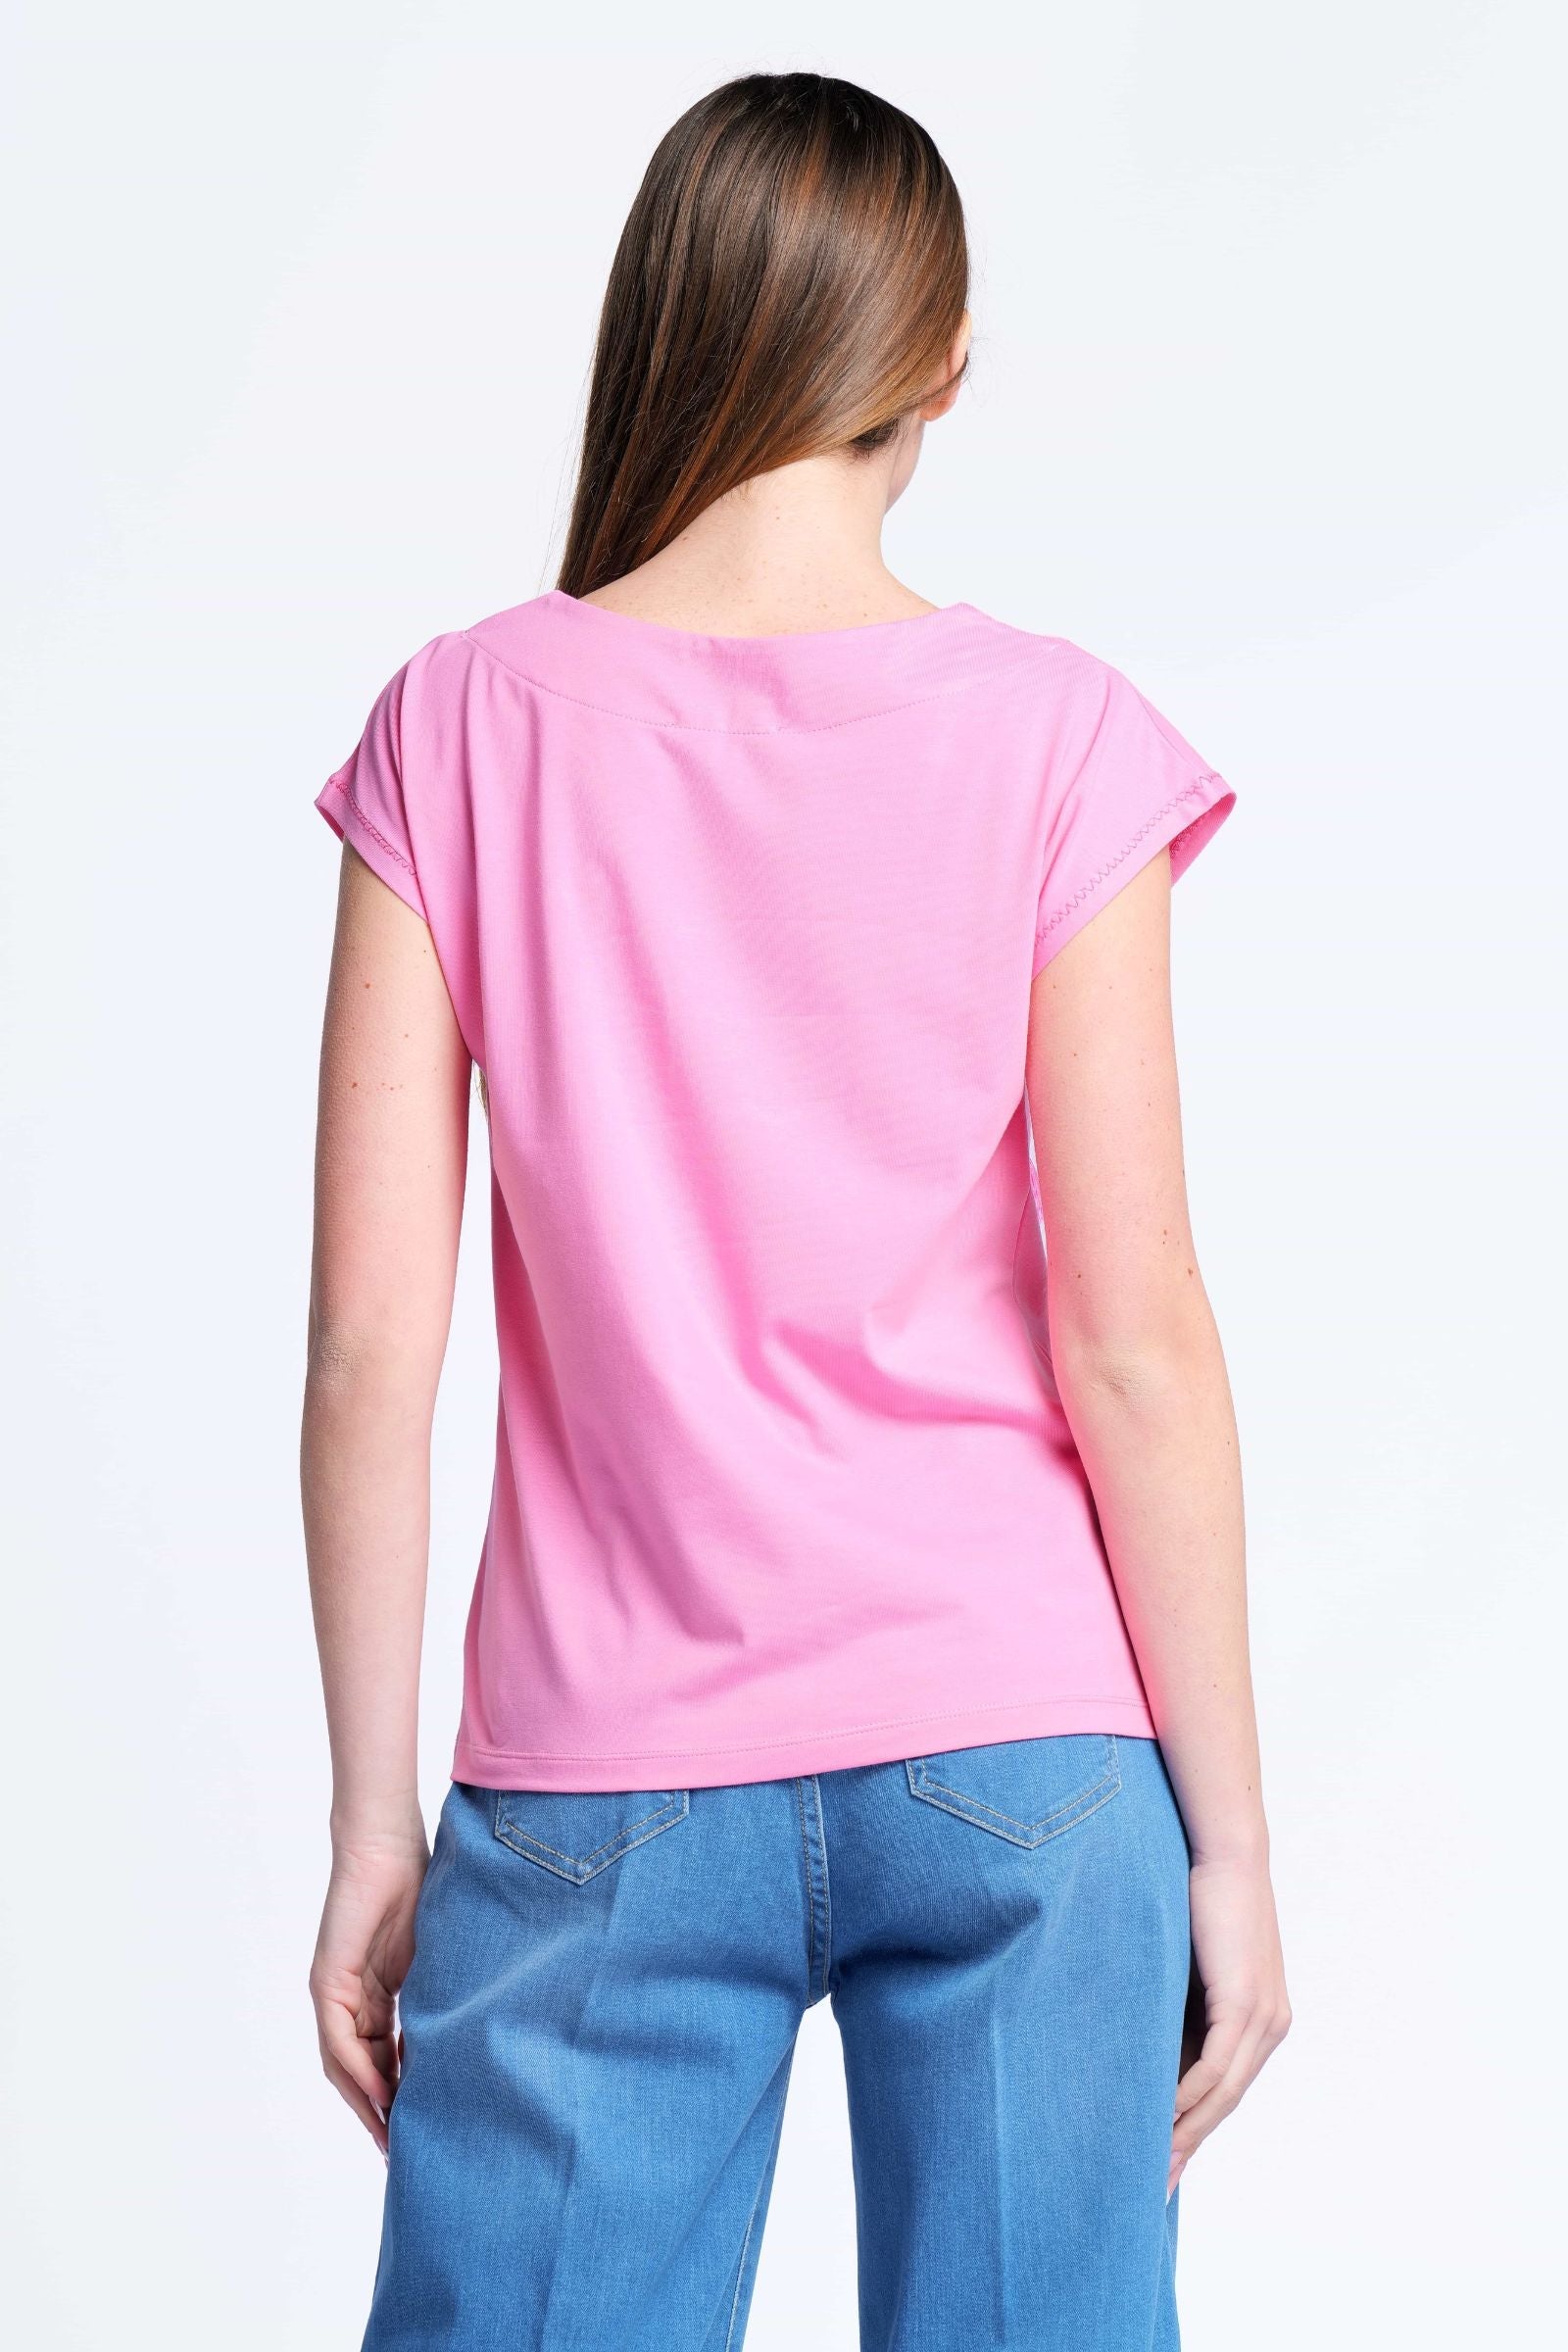 Camiseta rosa bordado love escote cuadrado Lolitas&L - lolitasyl.com